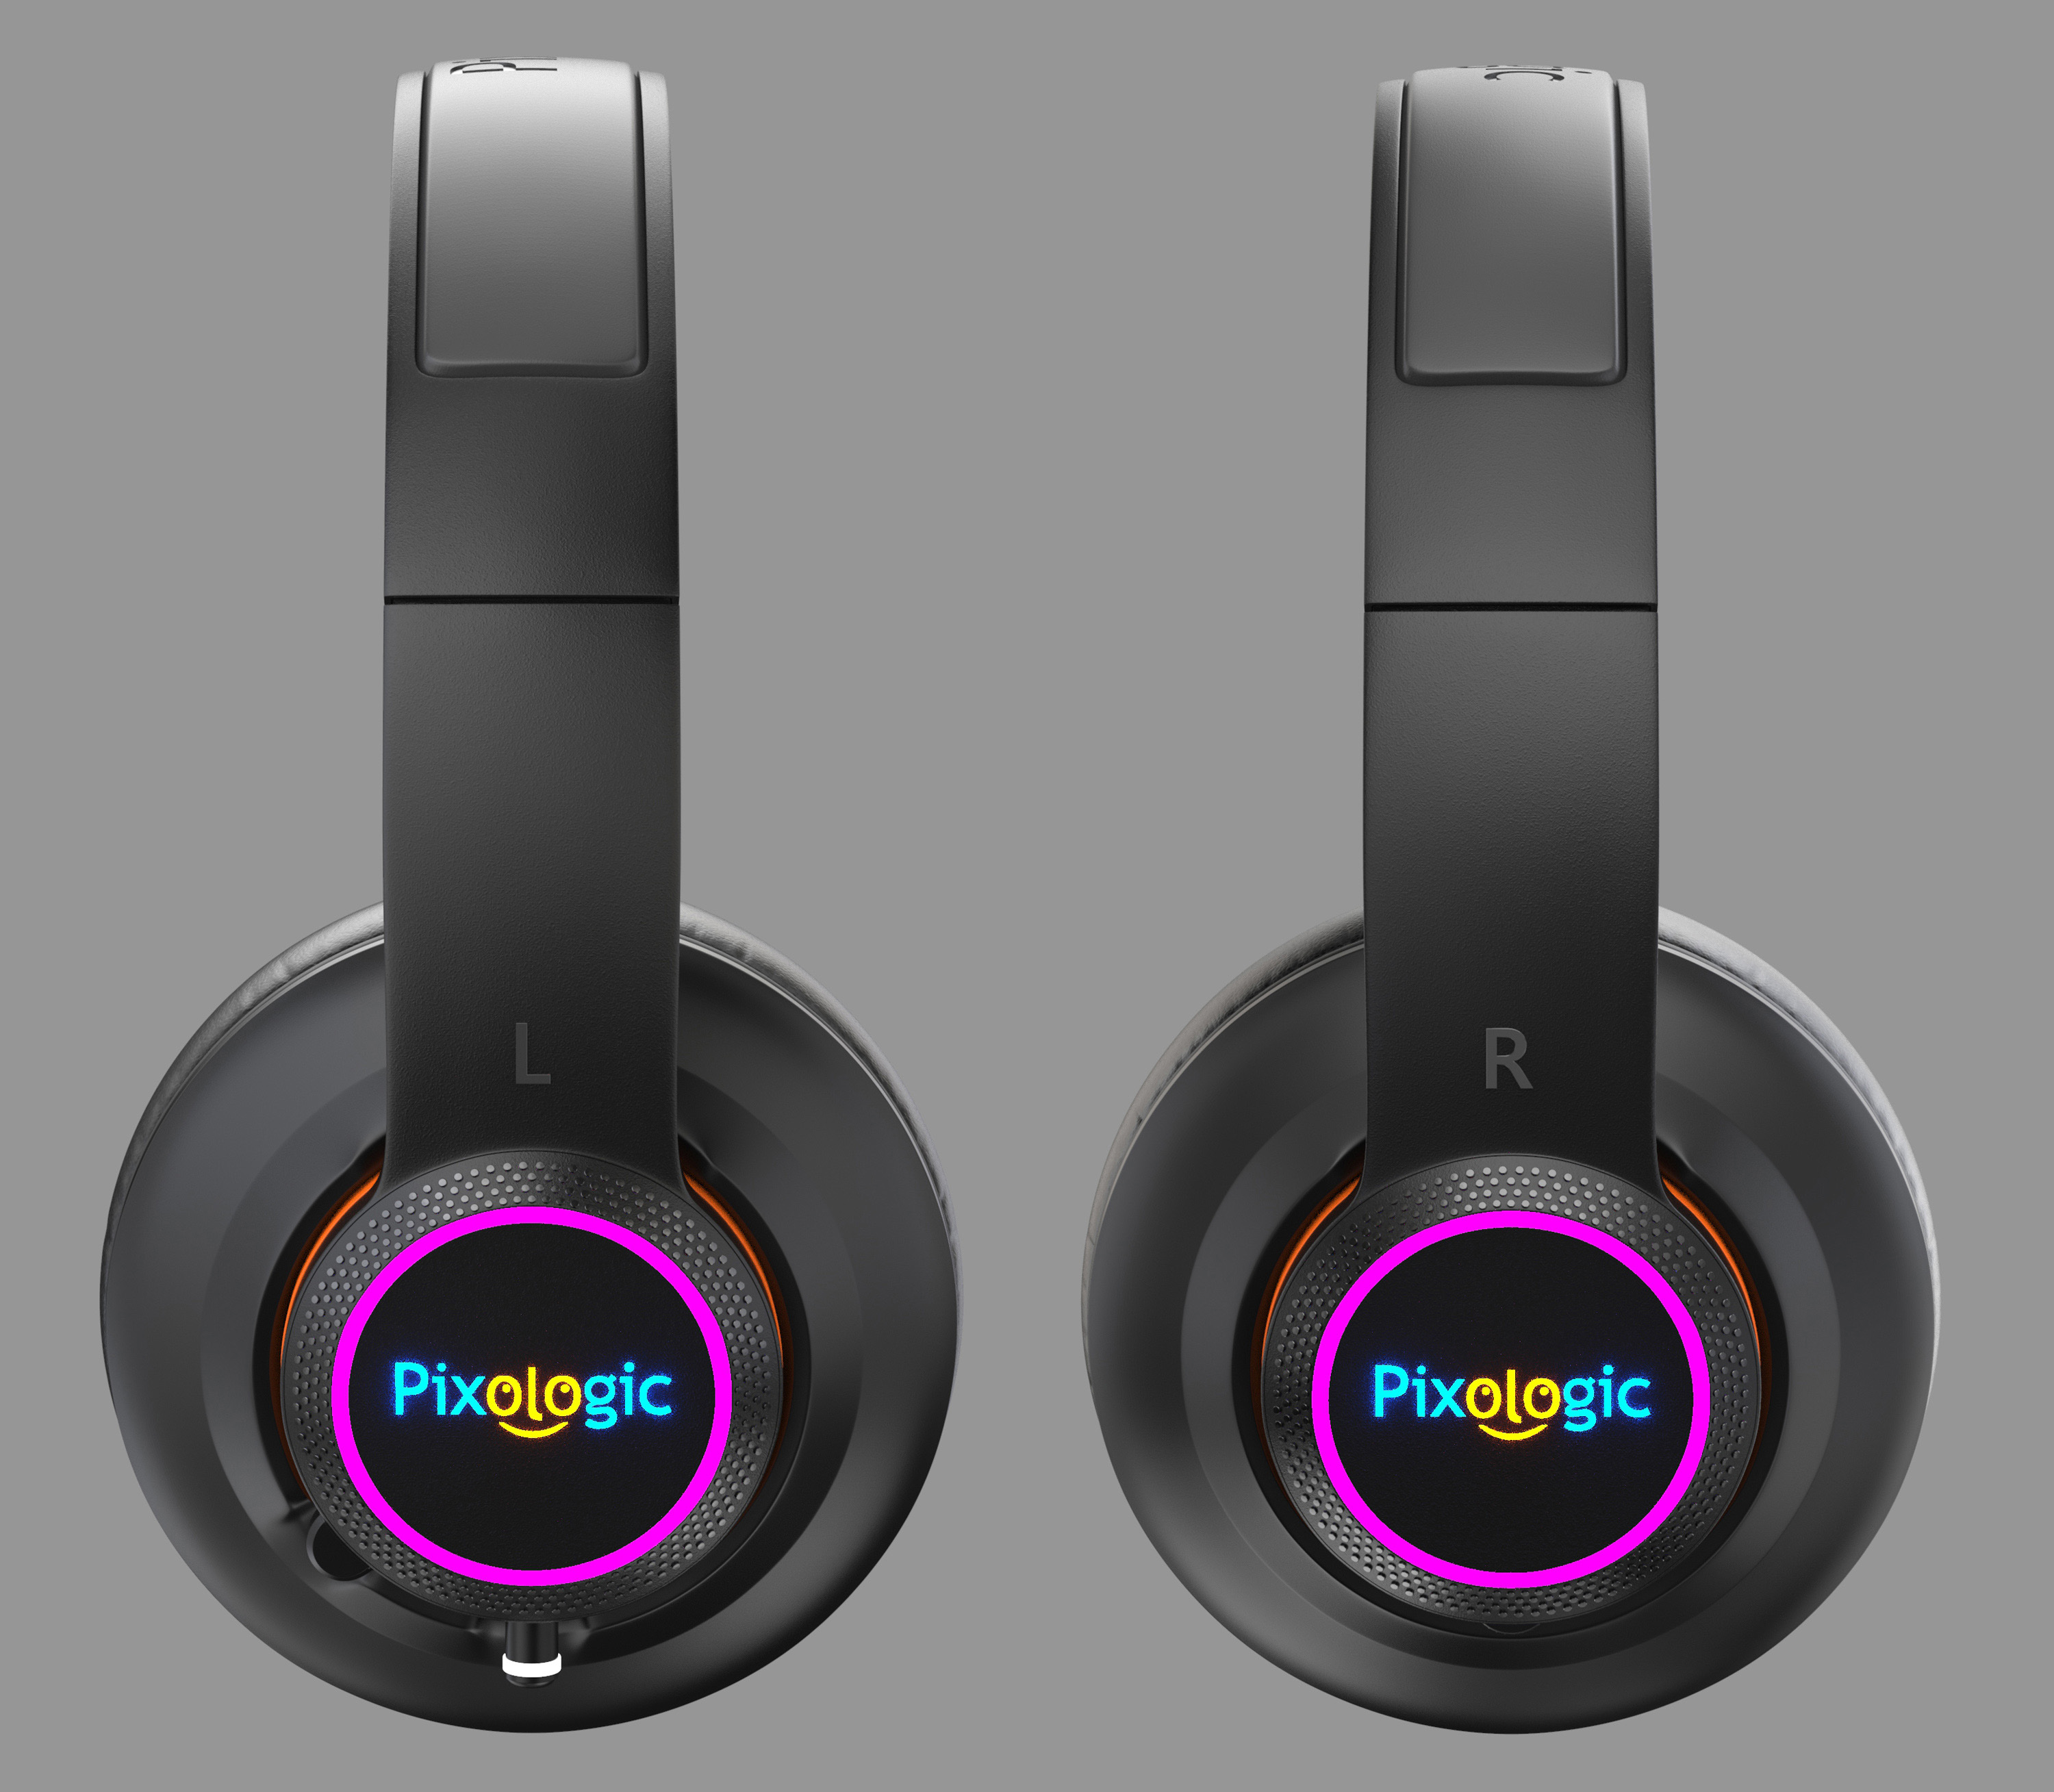 naghi hamidi_pixologic headsets (3).jpg